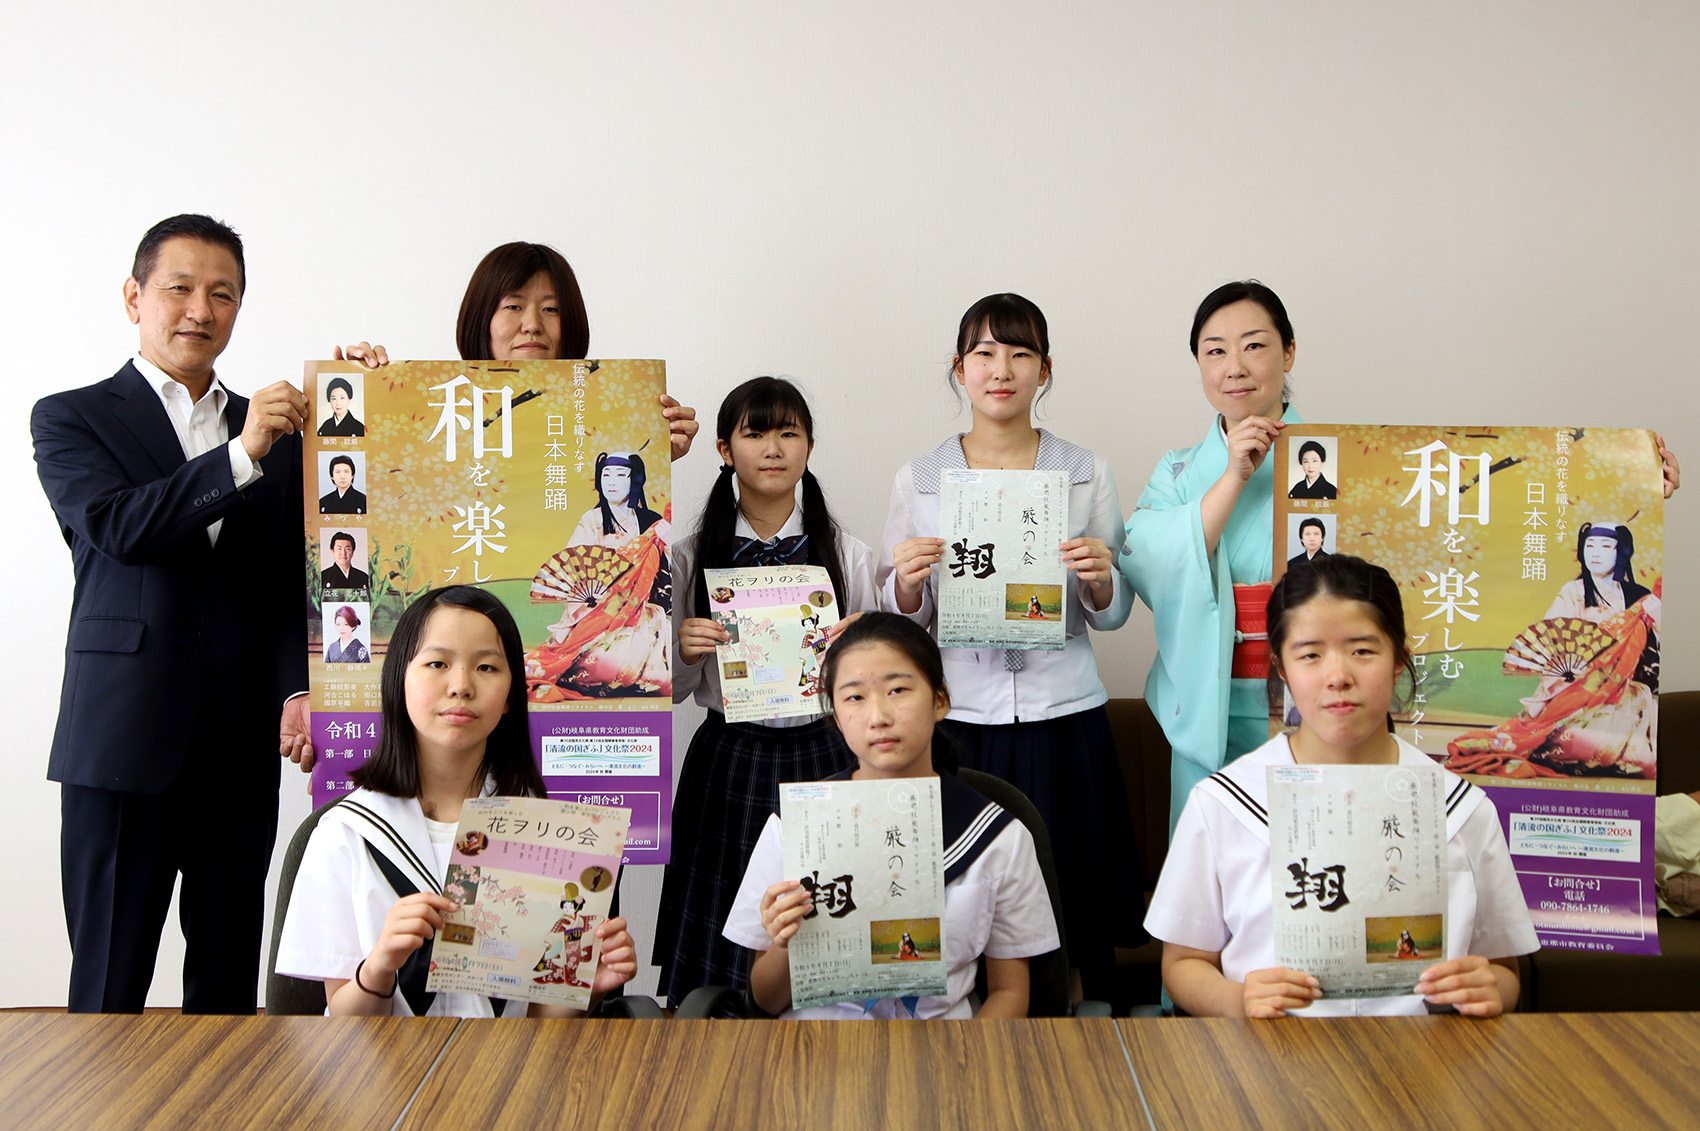 日本舞踊を発表する「花ヲリの会」「厳の会」の出演者たち